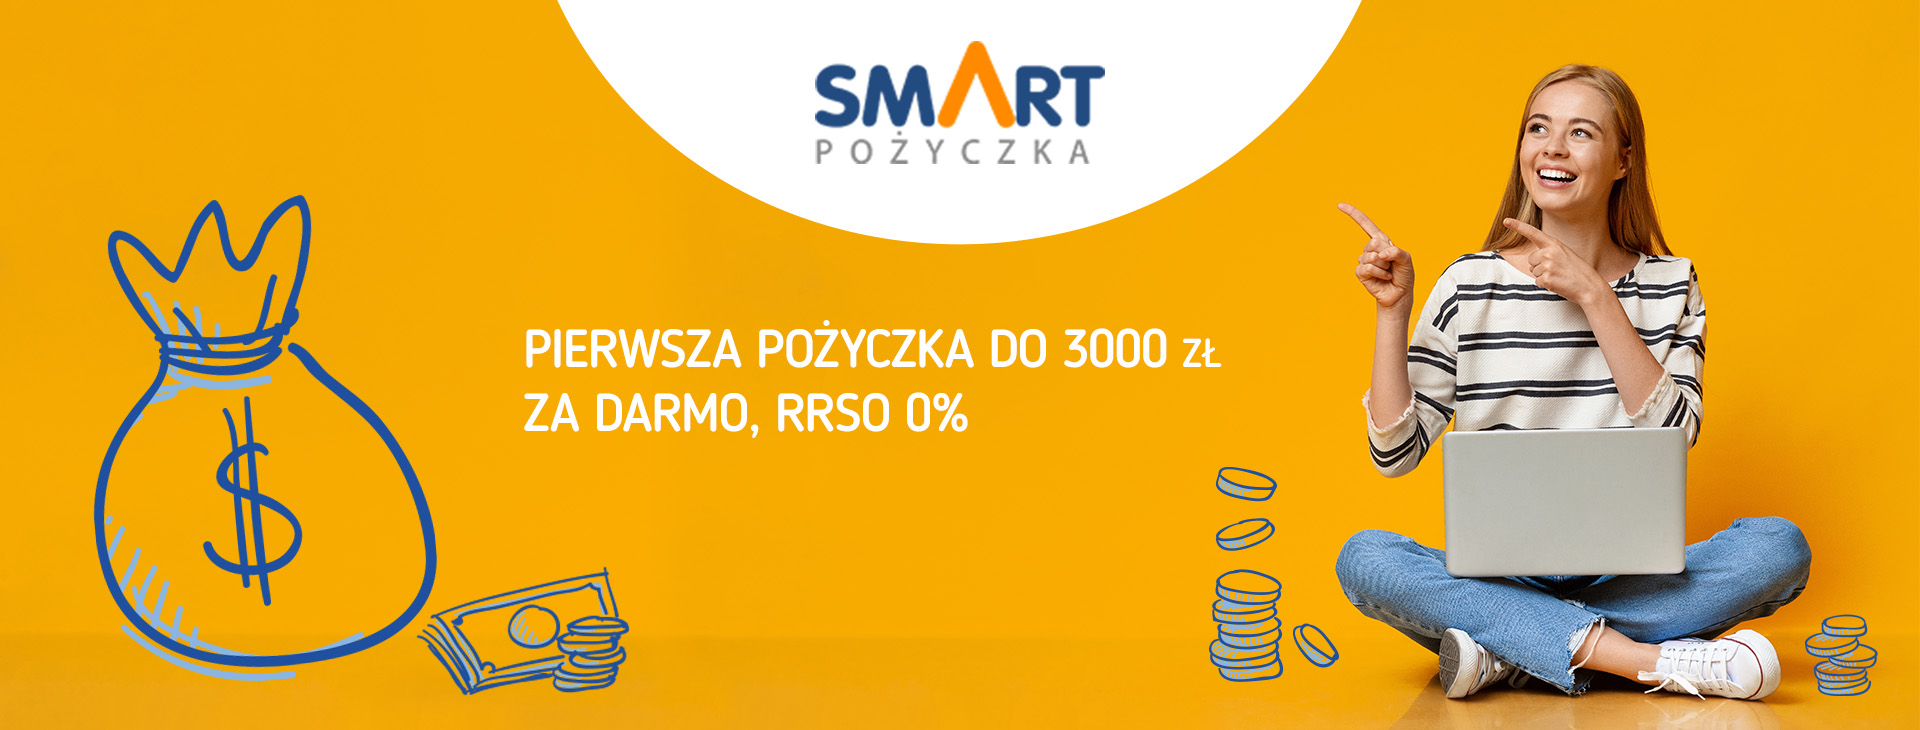 Smart Pożyczka - darmowa pożyczka nawet do 3000 zł